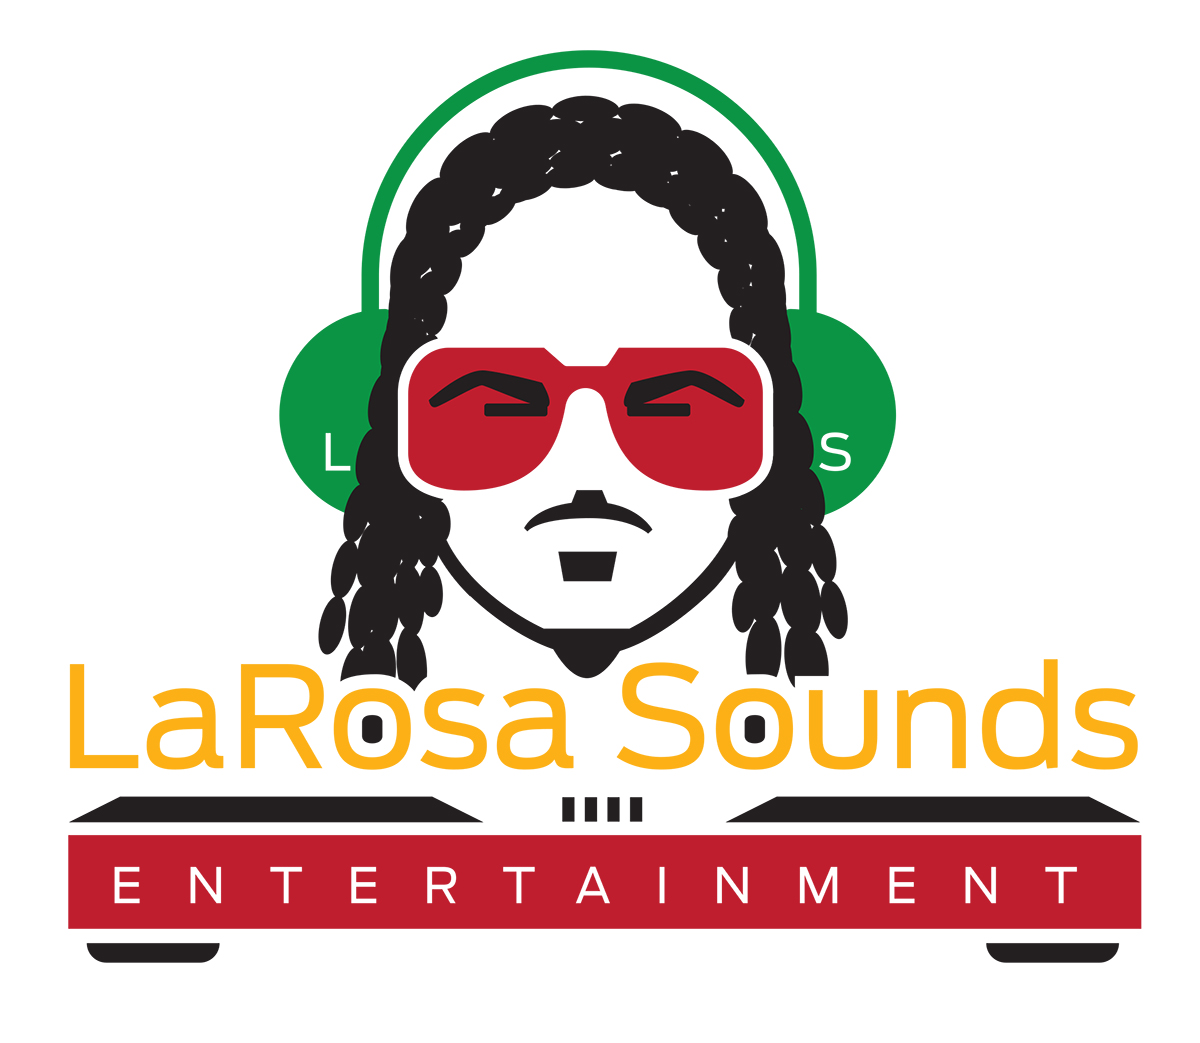 LaRosa-Sounds-Logo-design-FINAL-Vector-CLR